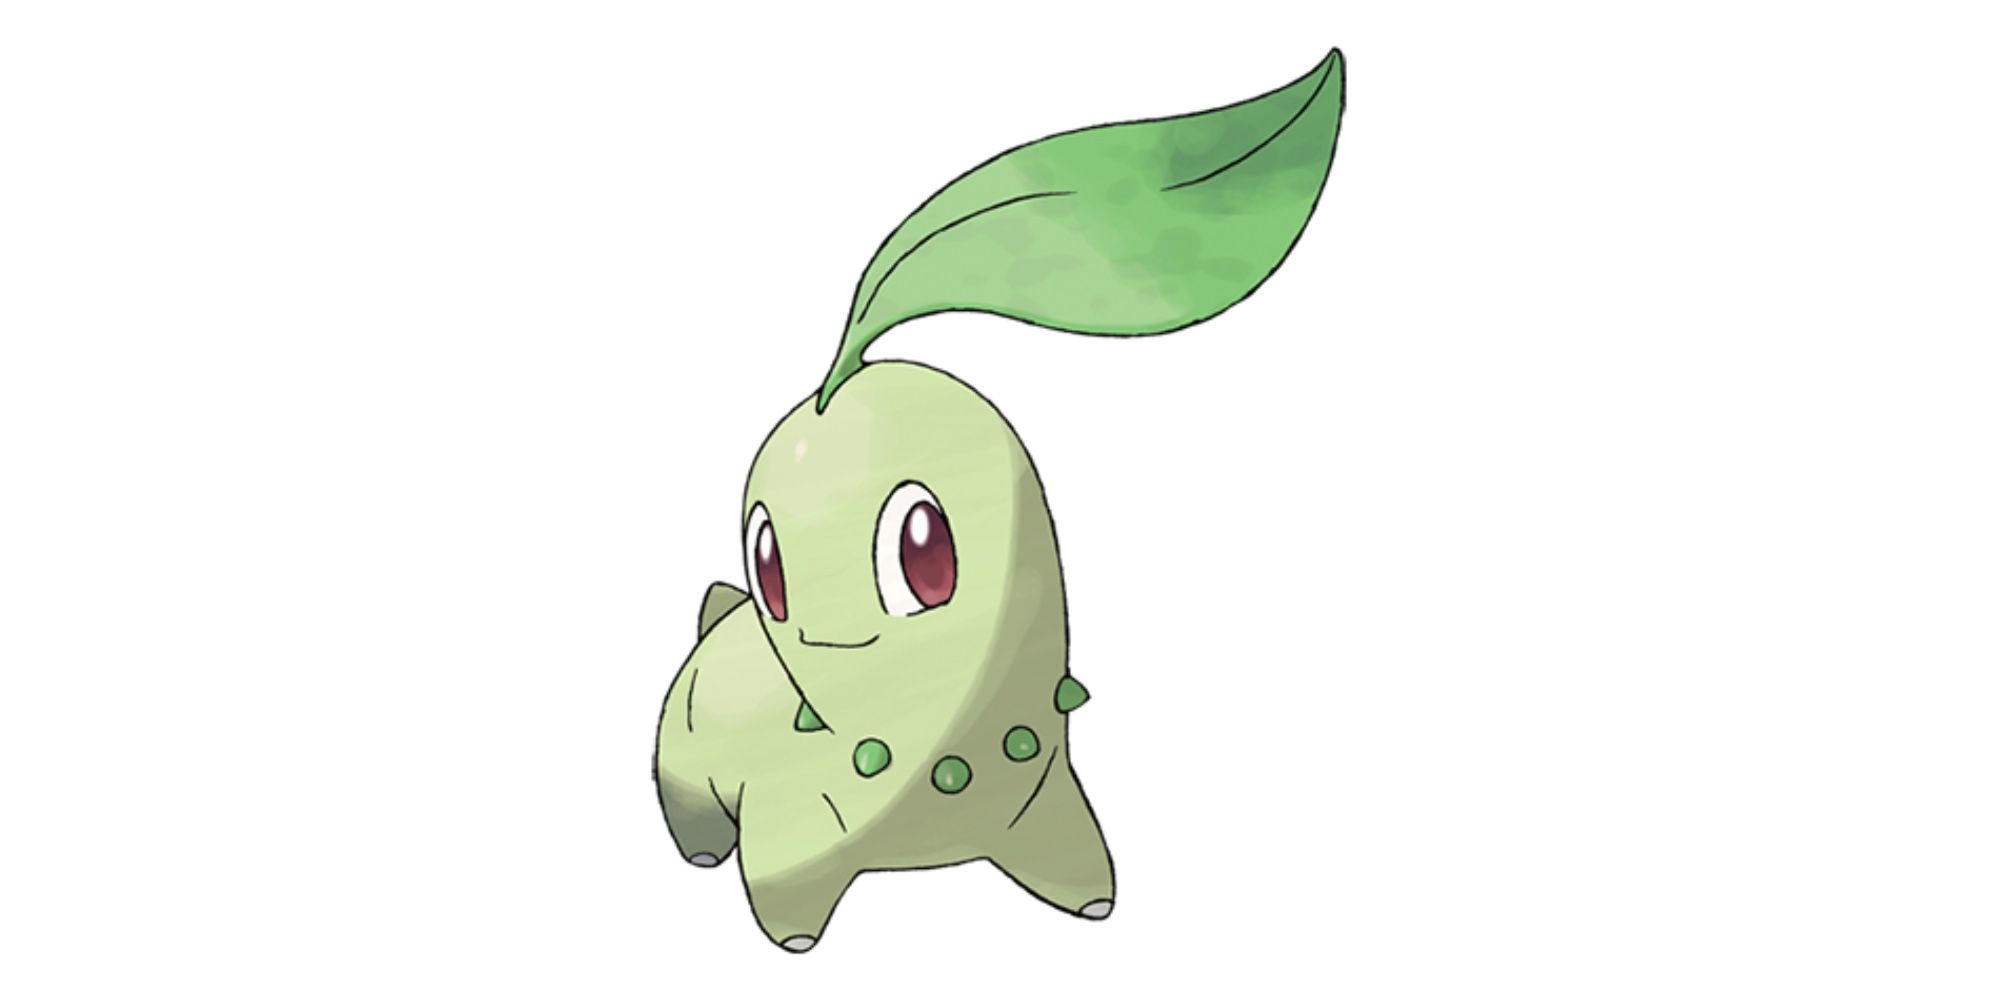 Hard to Find Pokémon in Pokémon GO - Chikorita - Grass-type Pokémon